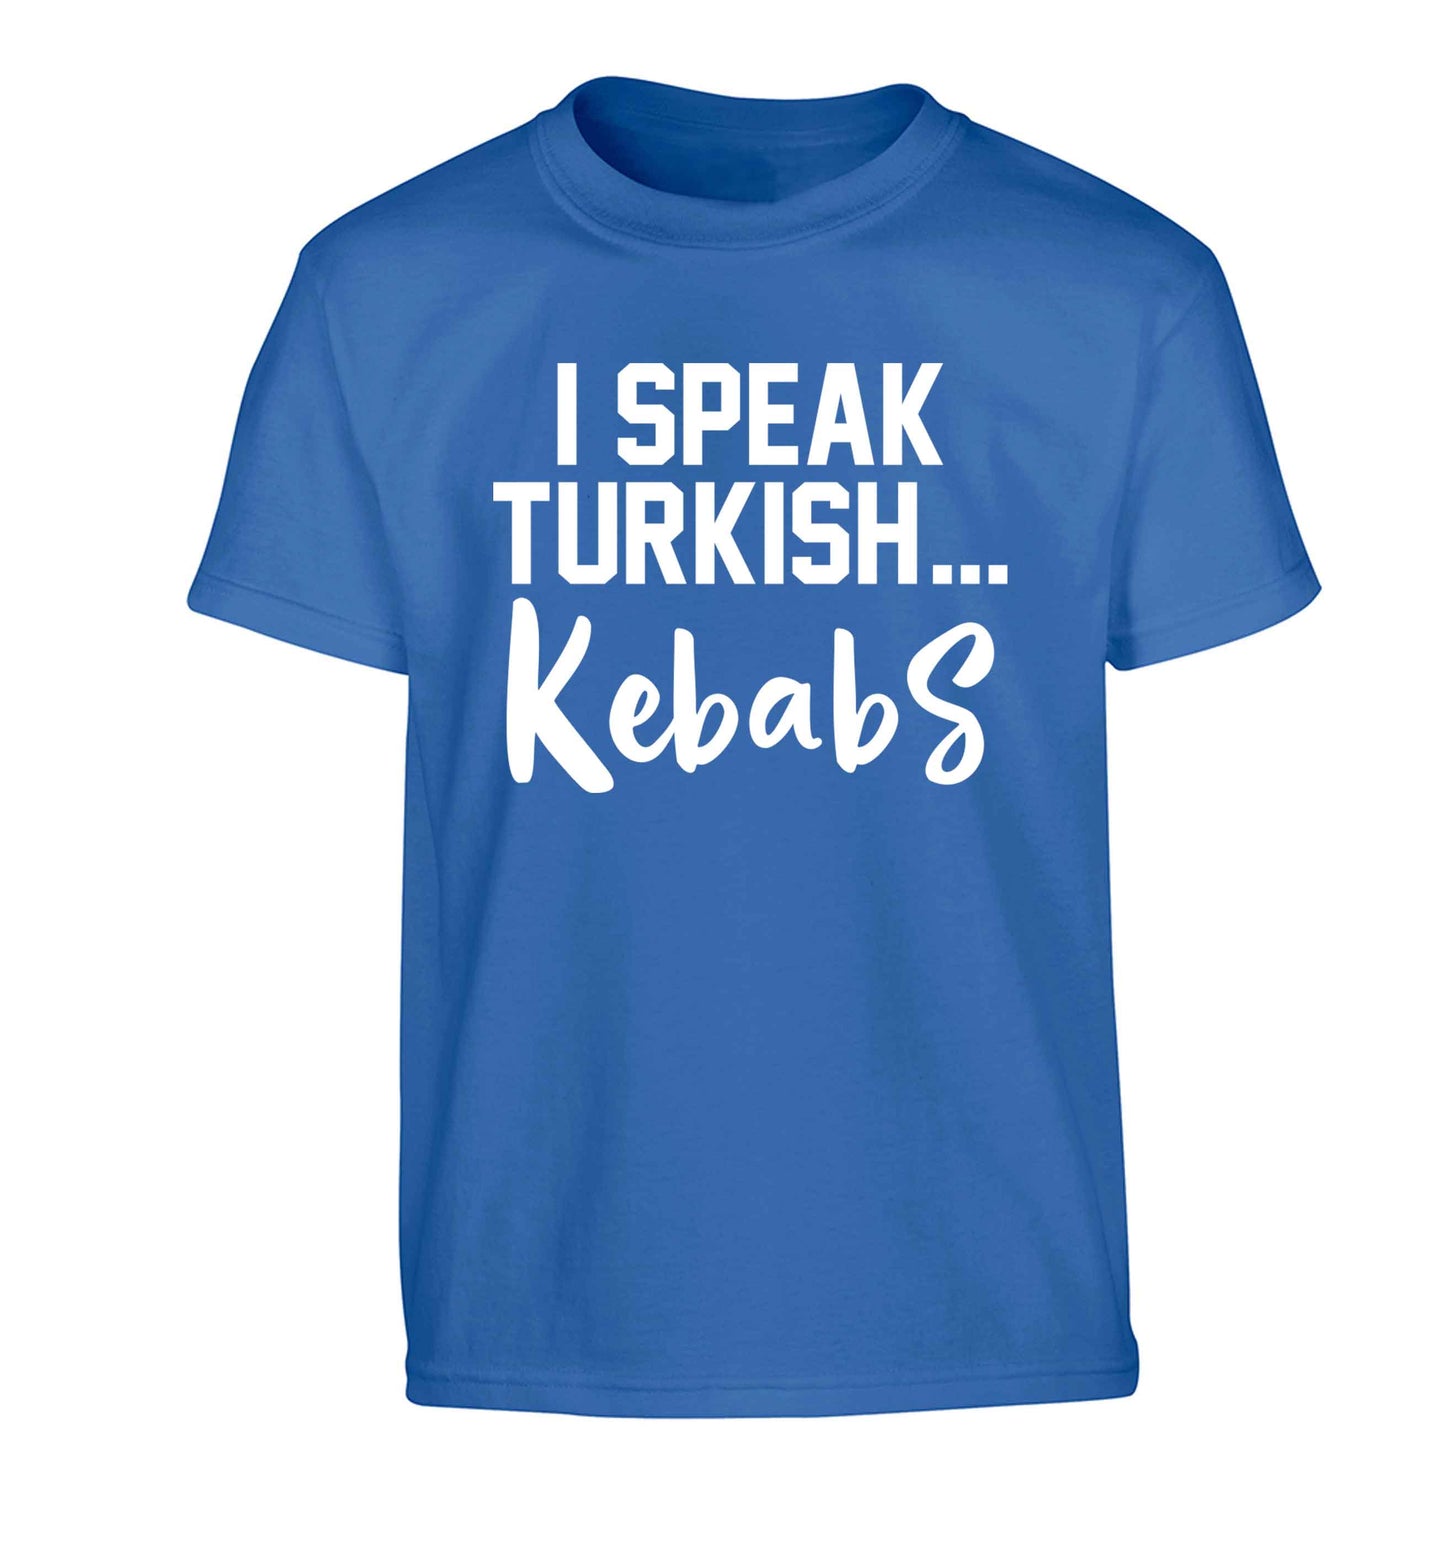 I speak Turkish...kebabs Children's blue Tshirt 12-13 Years